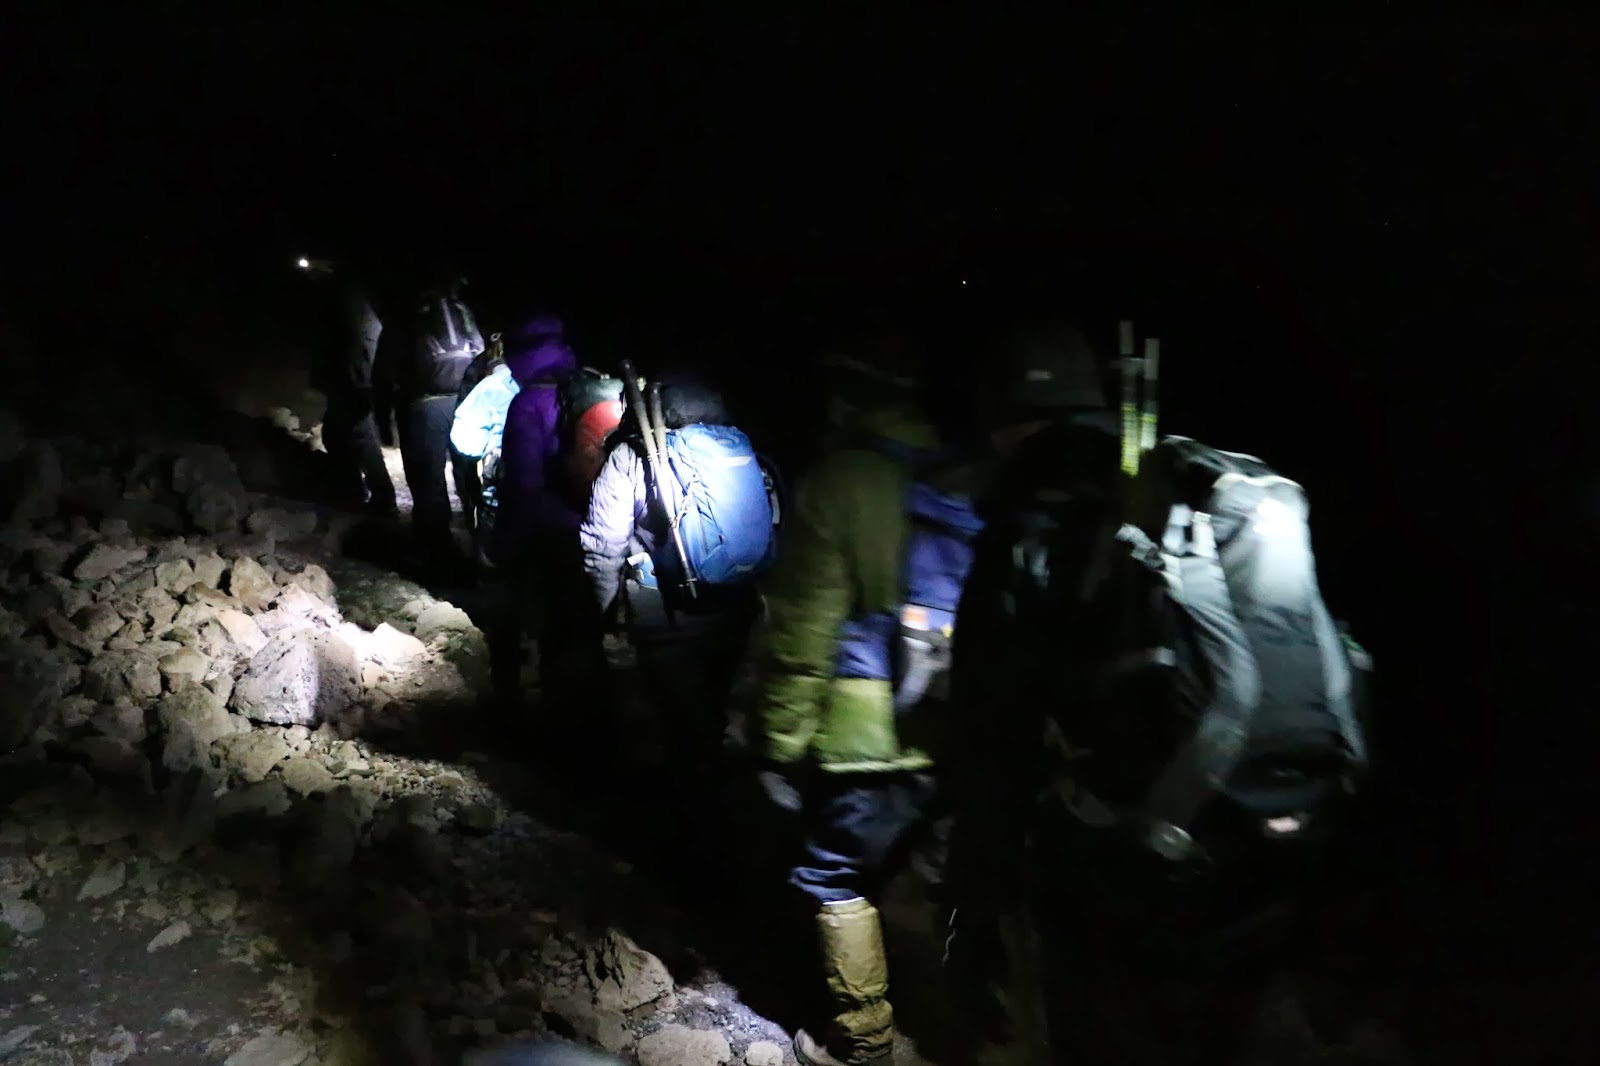 summiting Kilimanjaro at night